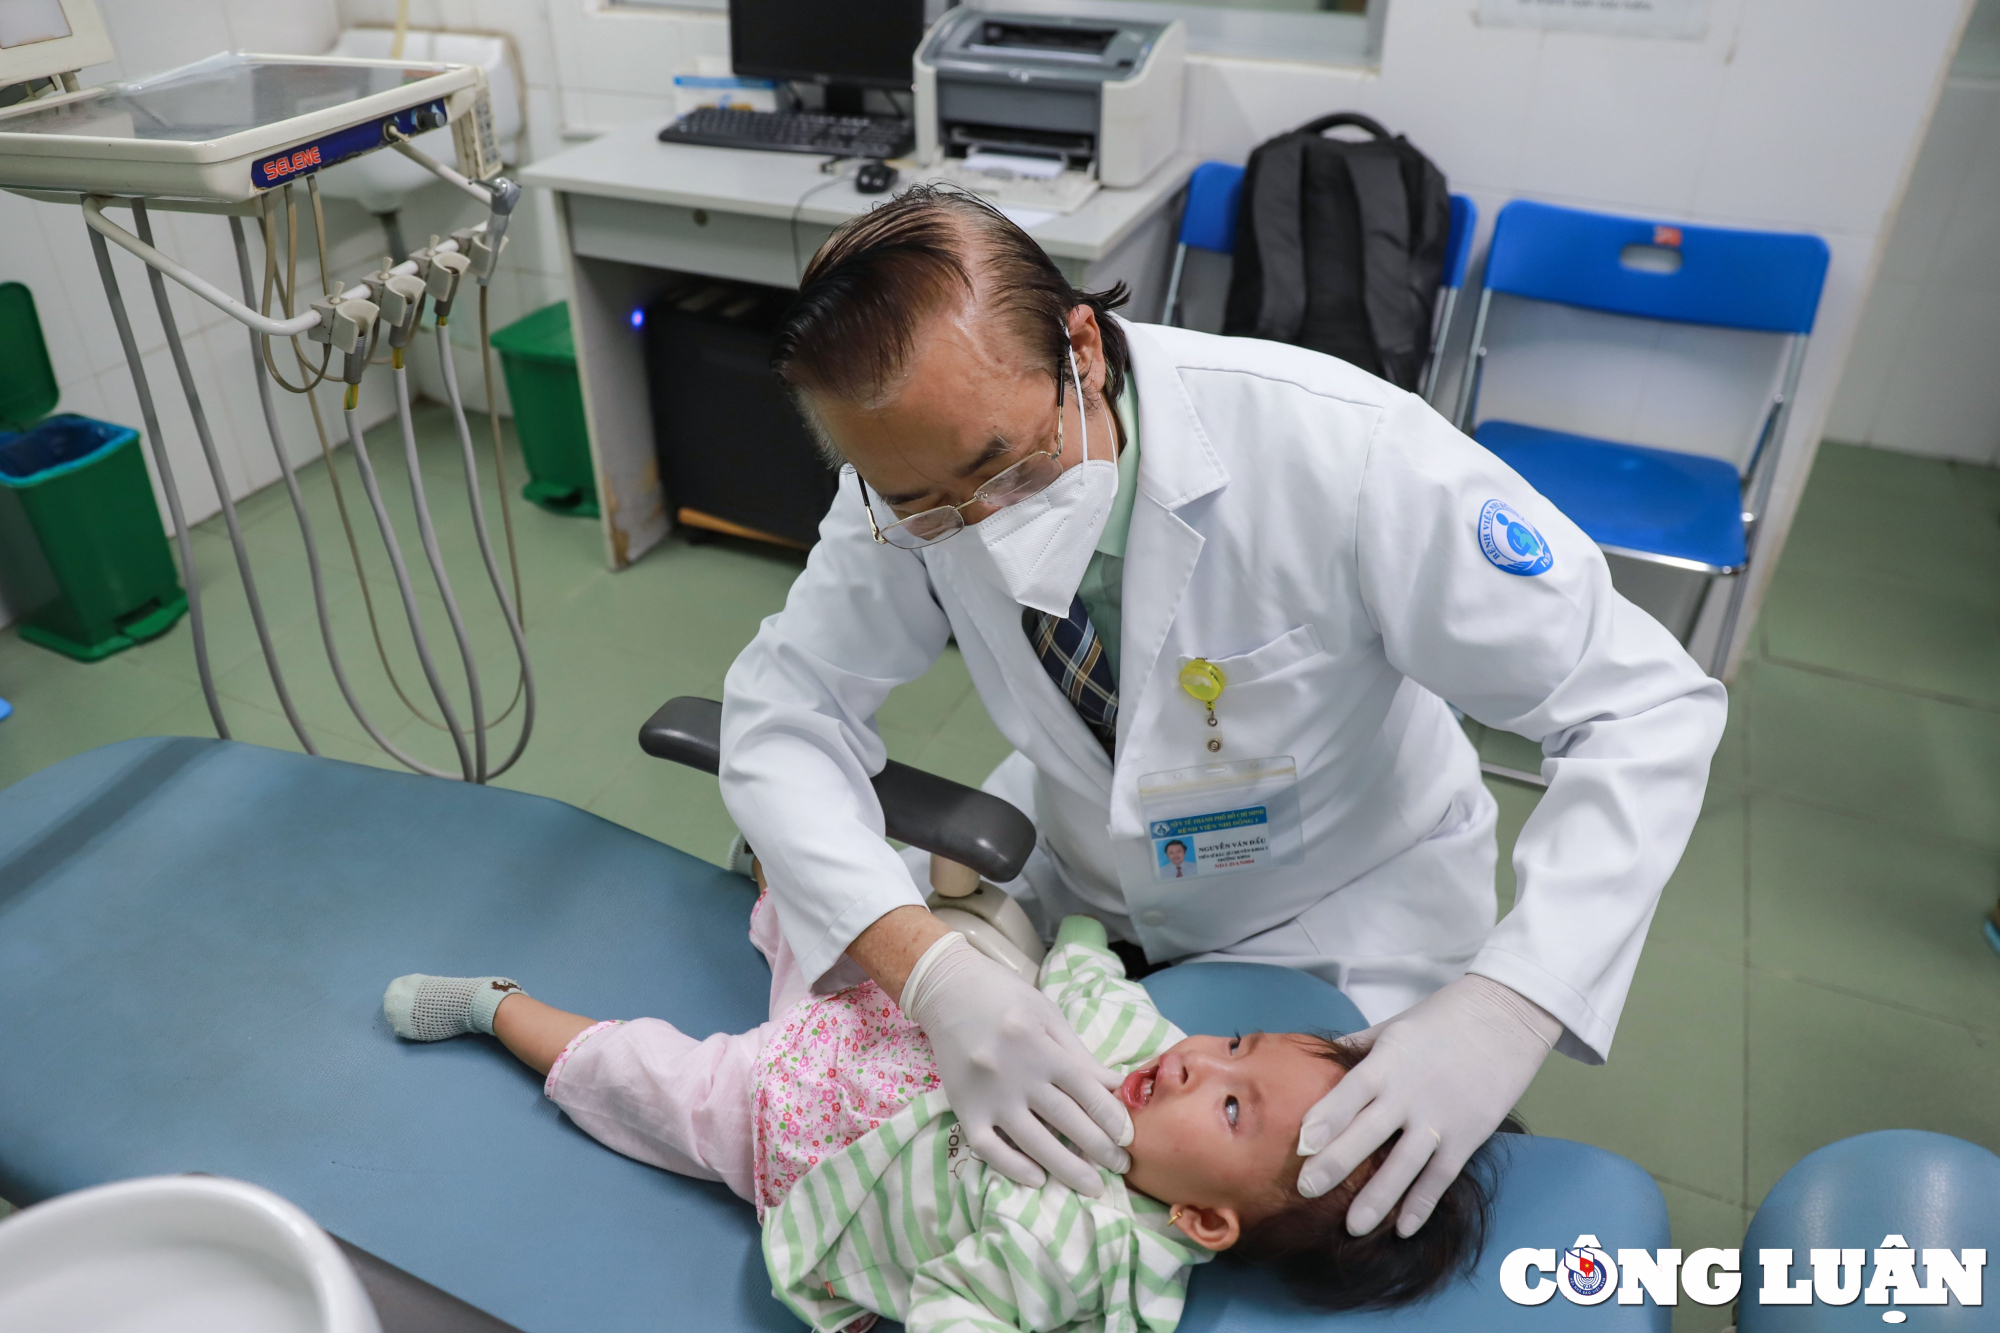 TS.BSCKII. Nguyễn Văn Đẩu - Trưởng khoa Răng Hàm Mặt, Bệnh viện Nhi Đồng 1 (TP HCM) đang khám cho bệnh nhi

